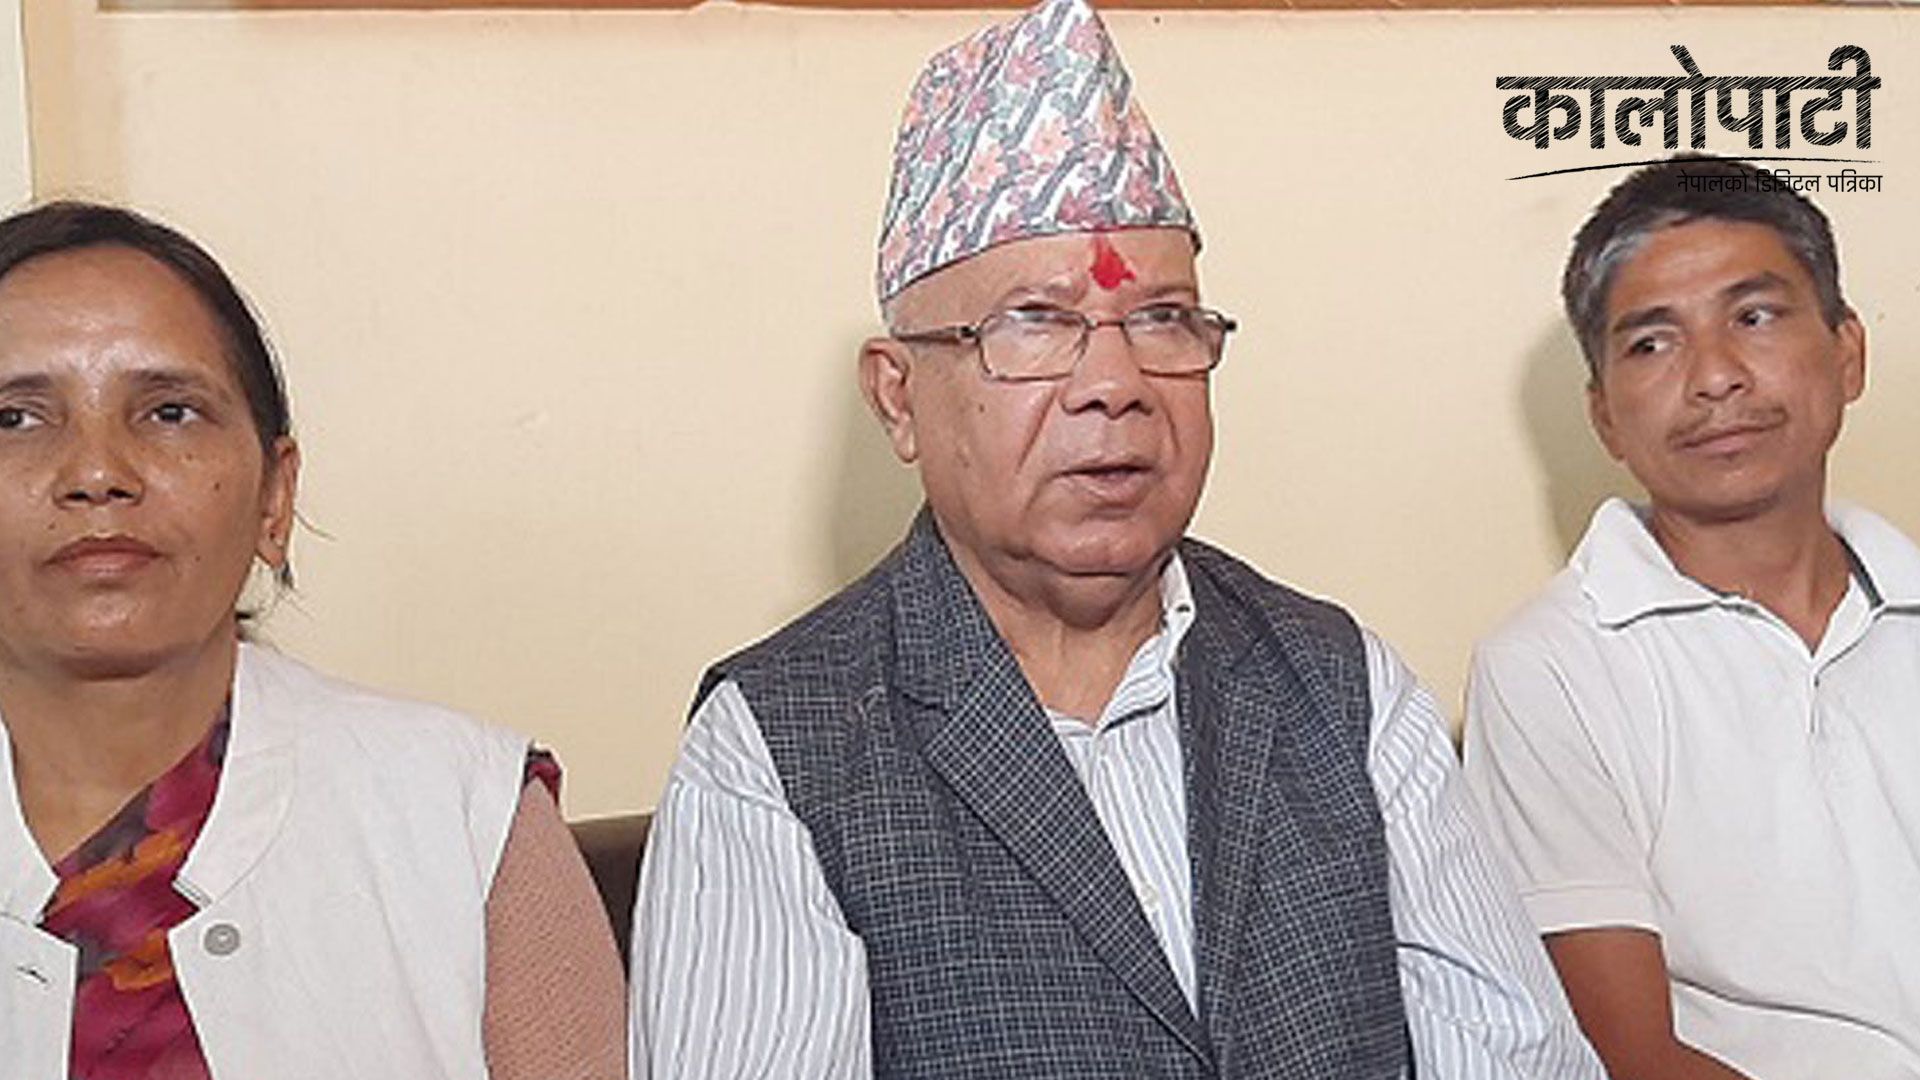 ‘वामपन्थी र लोकतान्त्रिक शक्ति चुनावमा मिलेर जाने सहमति भएको छ’ : अध्यक्ष नेपाल